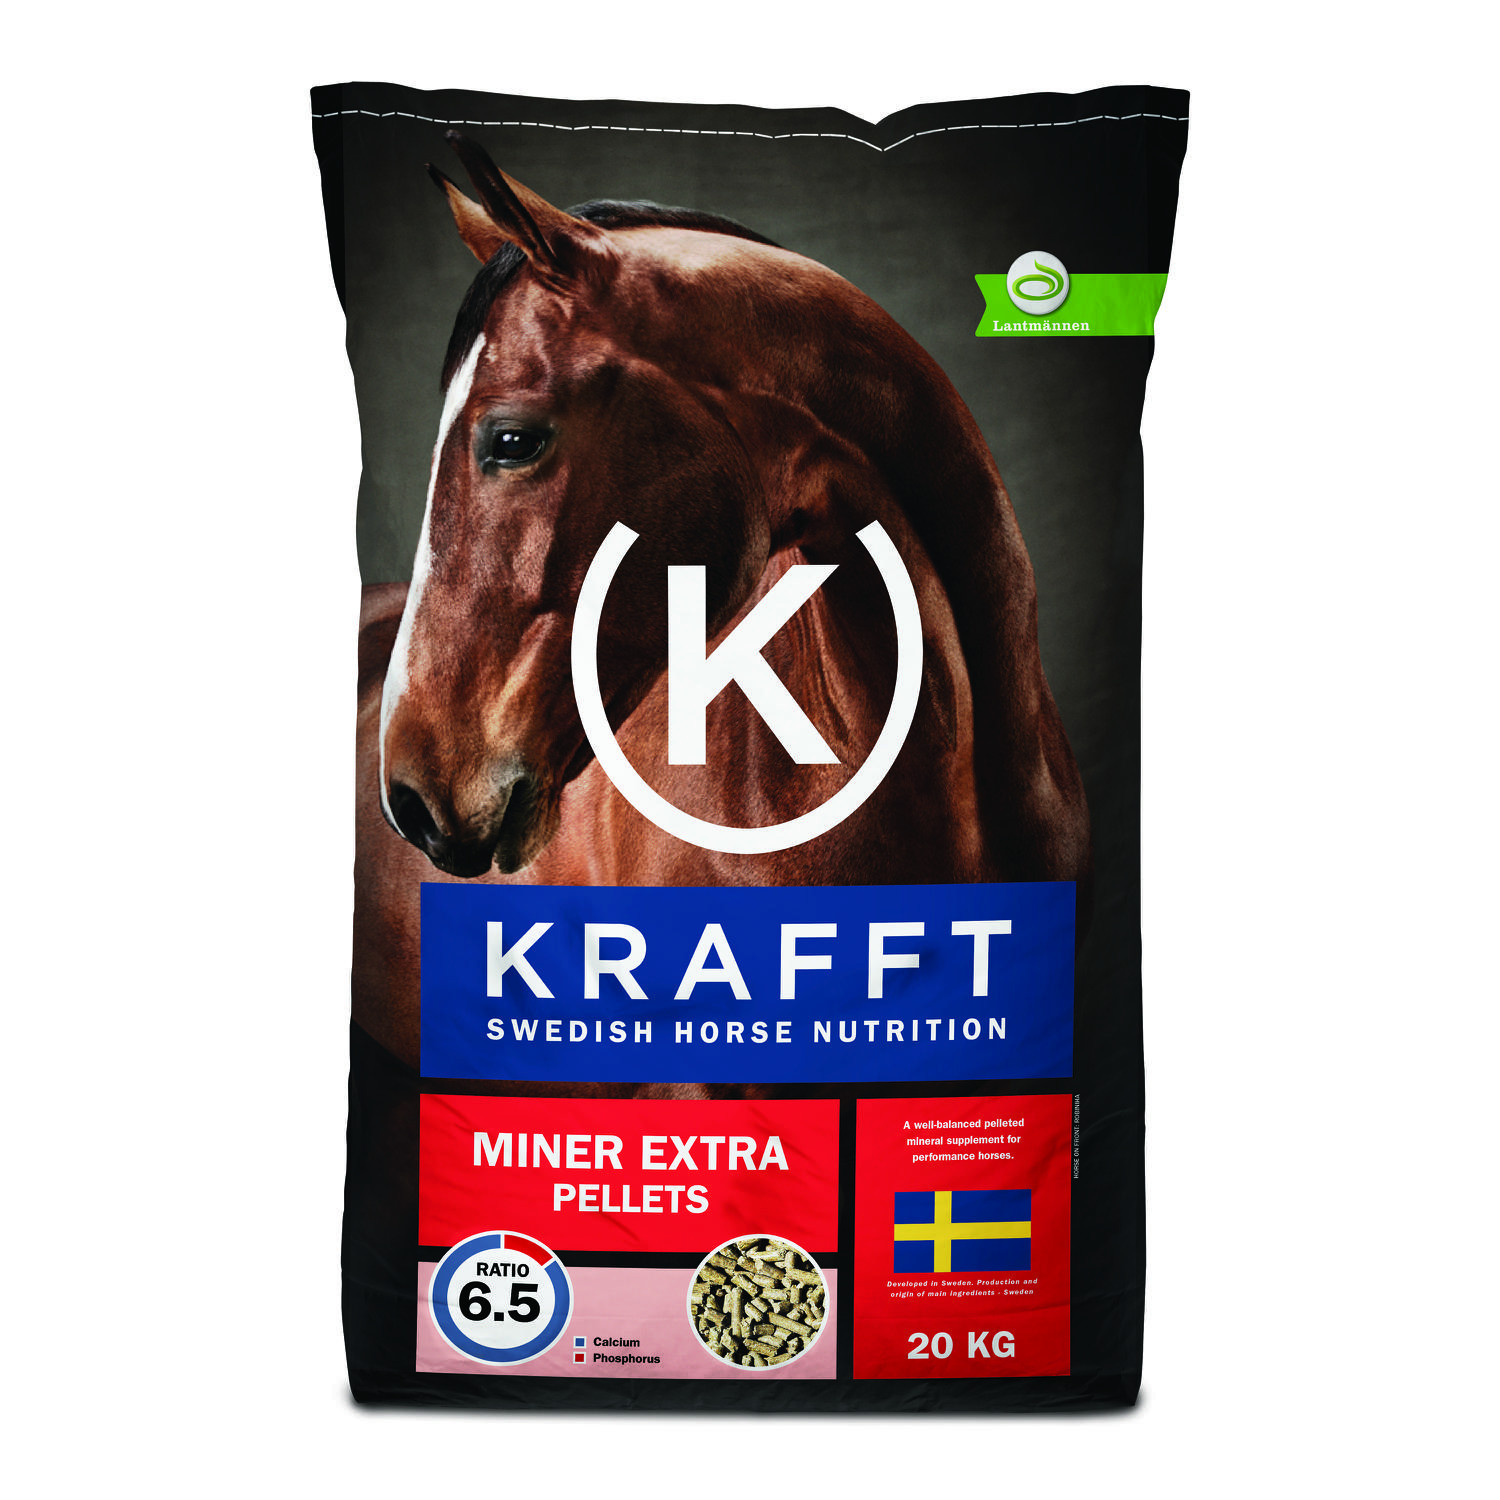 Krafft miner extra pellets 20 kg